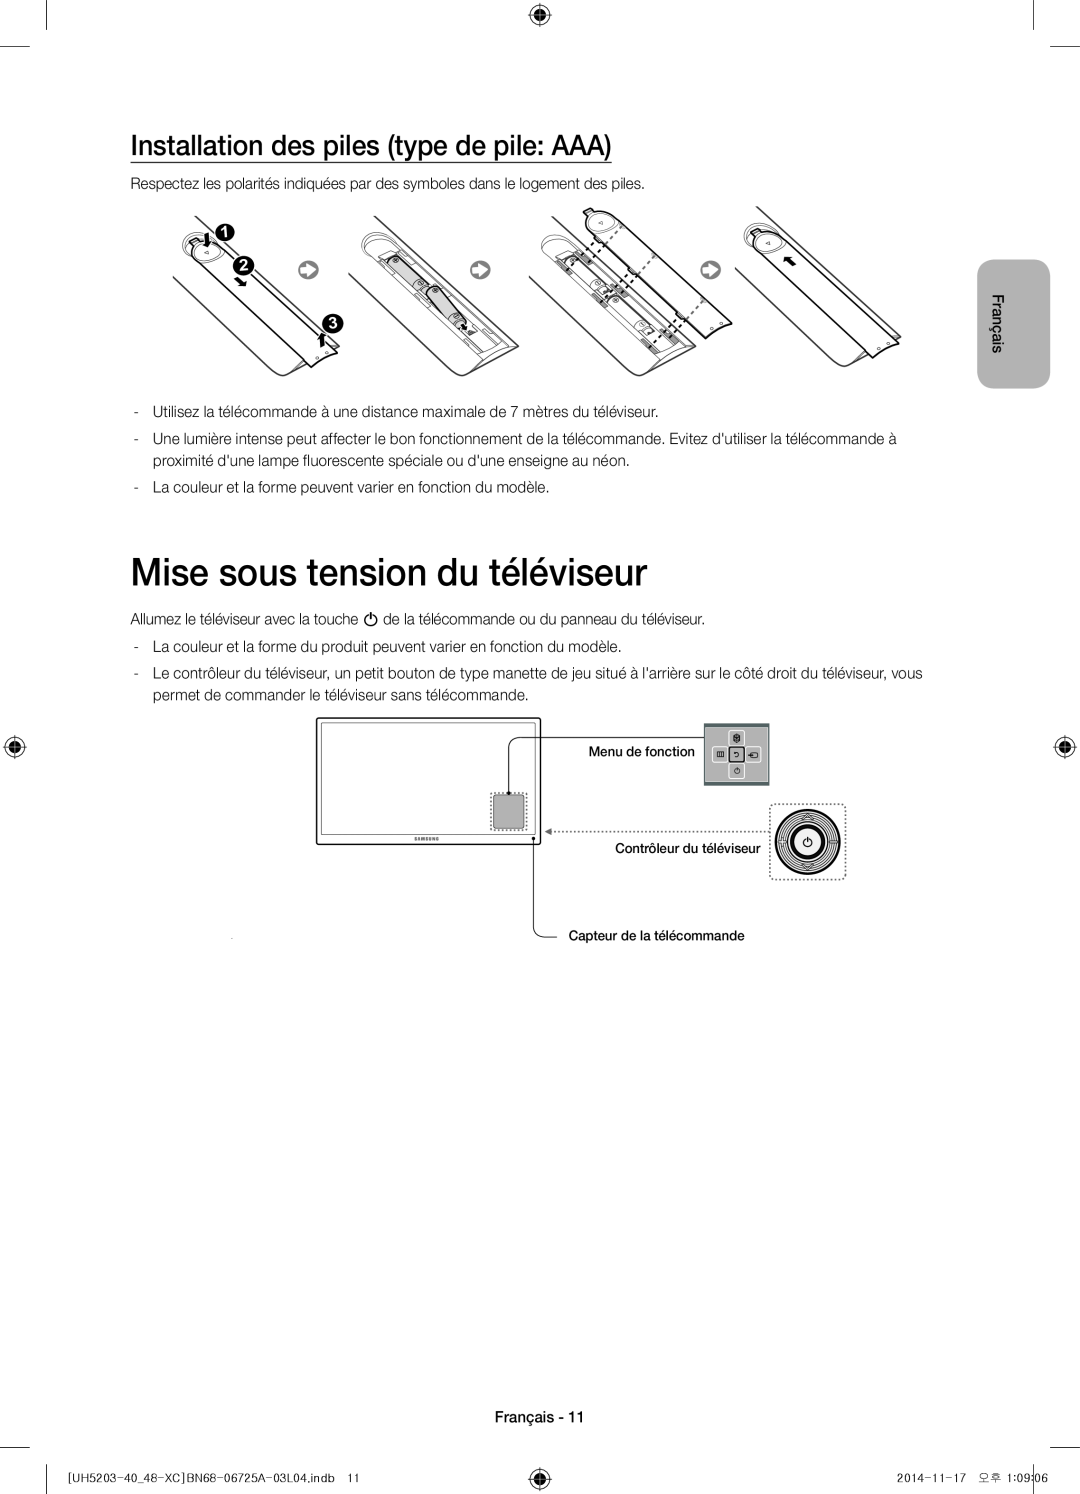 Samsung UE48H5203AWXXC, UE40H5203AWXXC manual Mise sous tension du téléviseur, Installation des piles type de pile AAA 